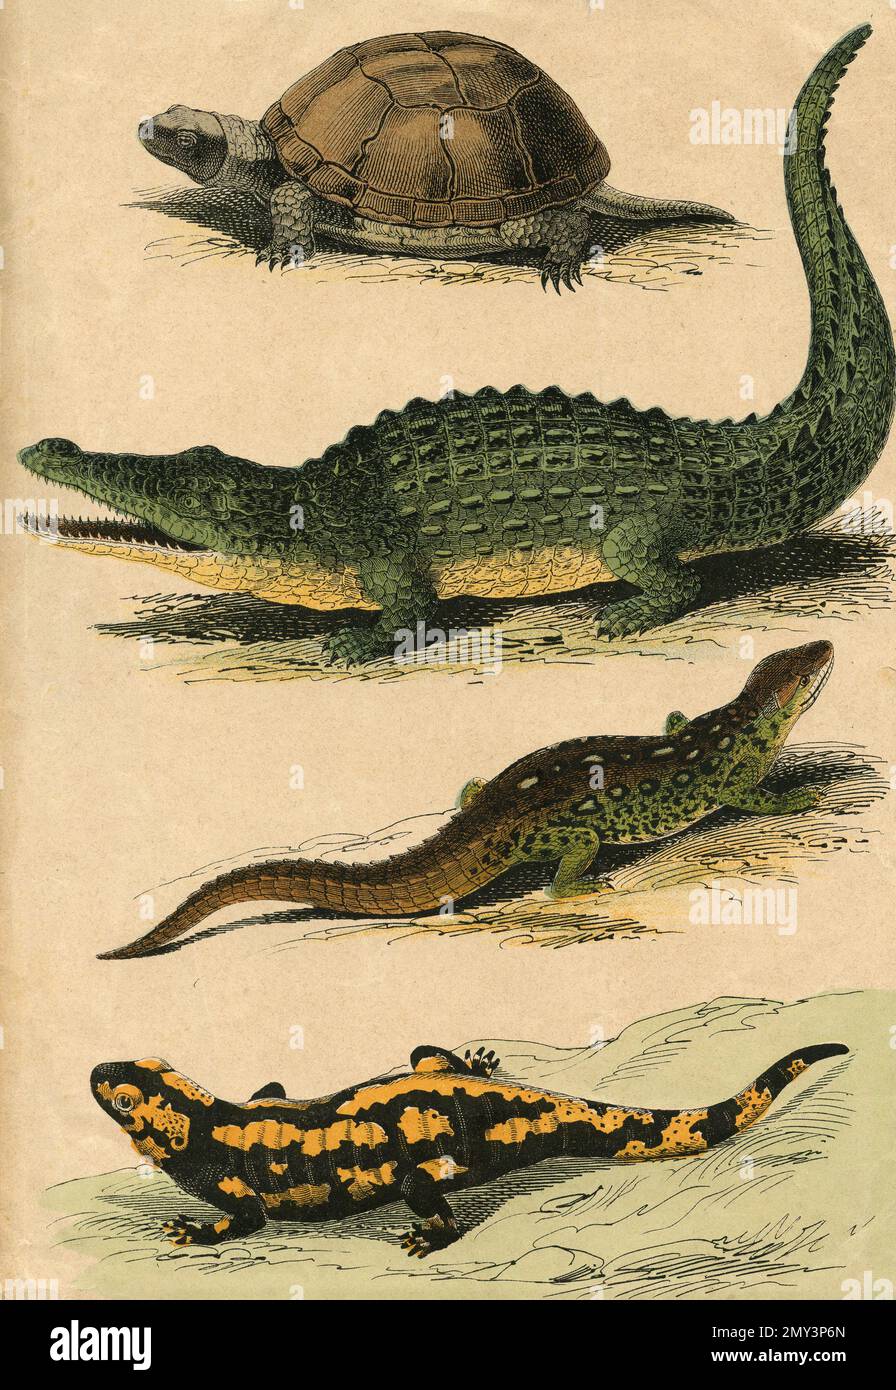 Tierwelt, Reptilien: Schildkröte, Krokodil, Eidechse, Salamander, Farbdarstellung, 1800er Stockfoto